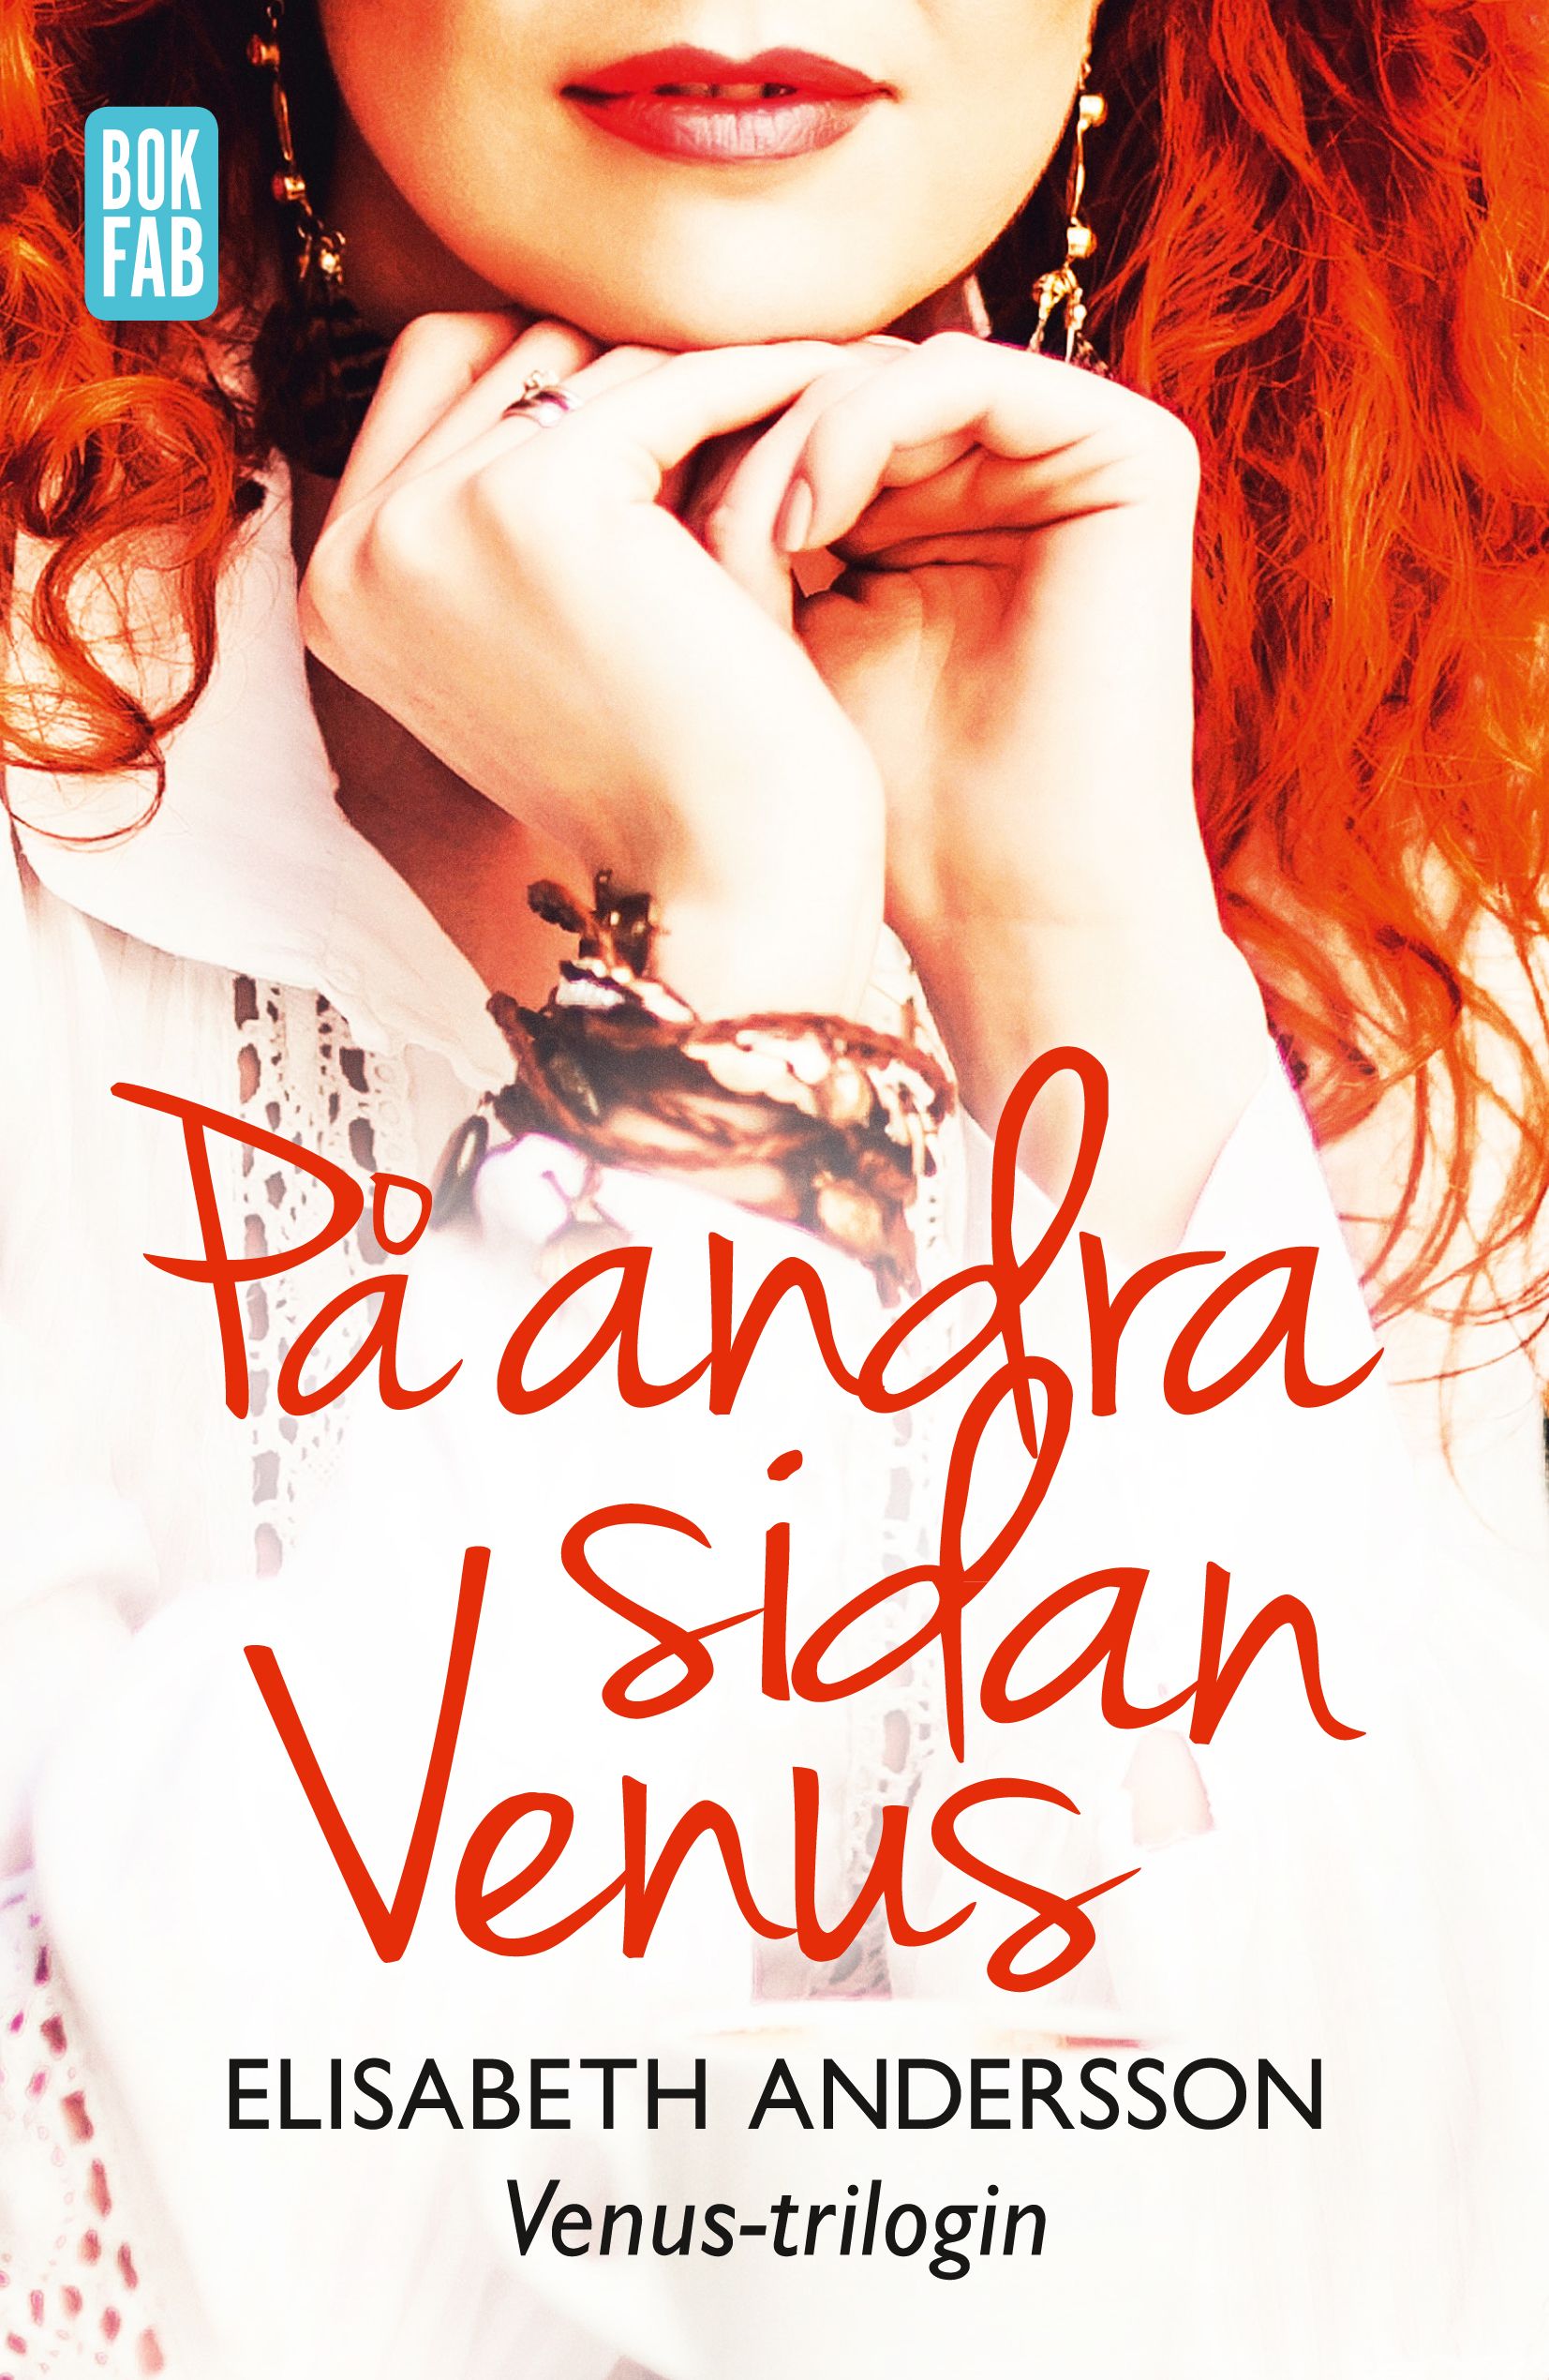 På andra sidan Venus, ljudbok av Elisabeth Andersson